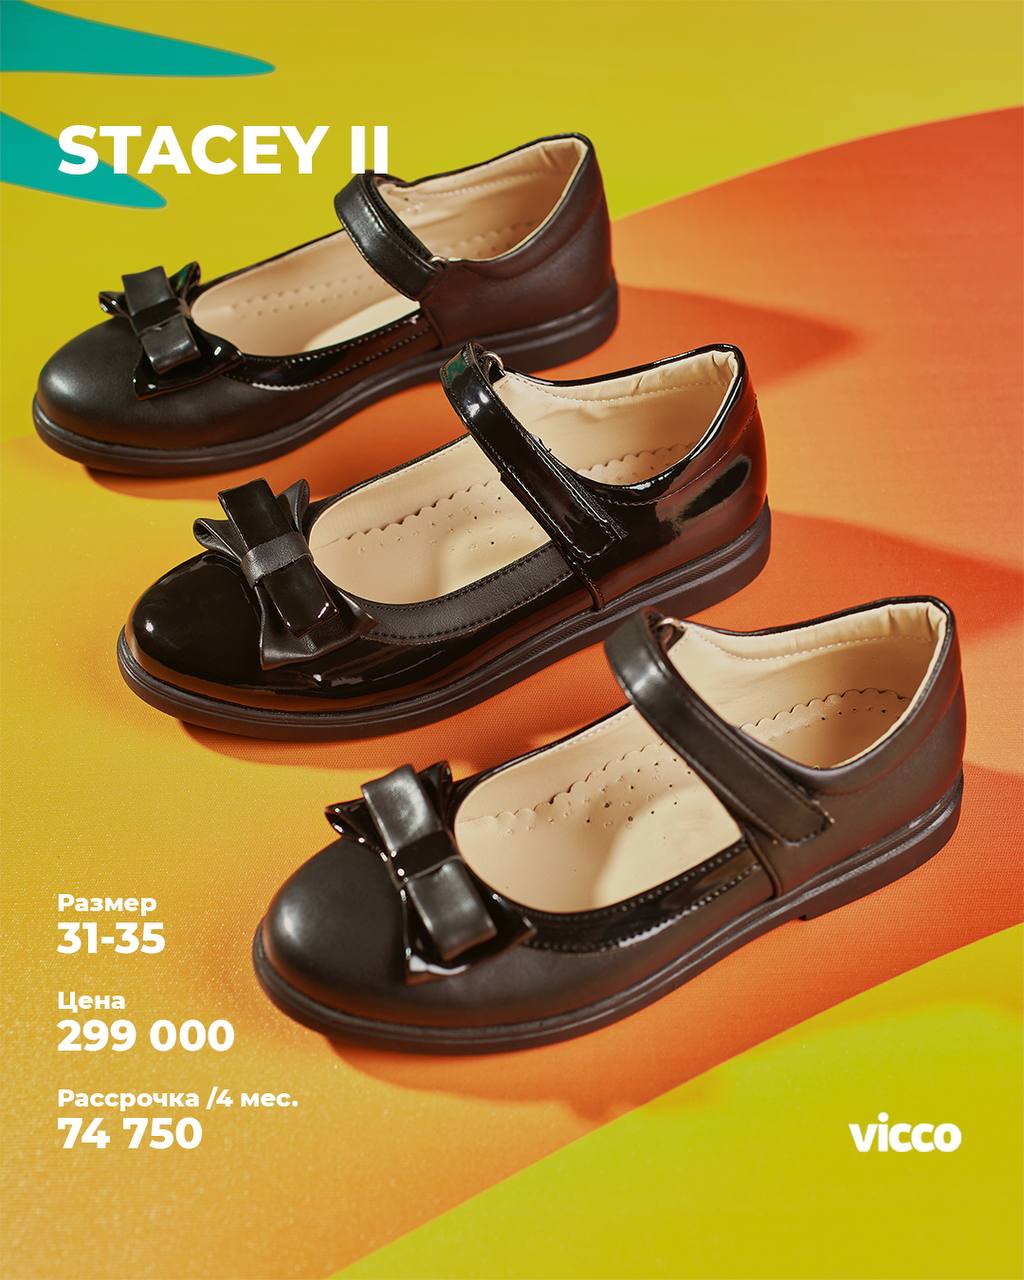 Купить школьную обувь - Коллекция Stacey